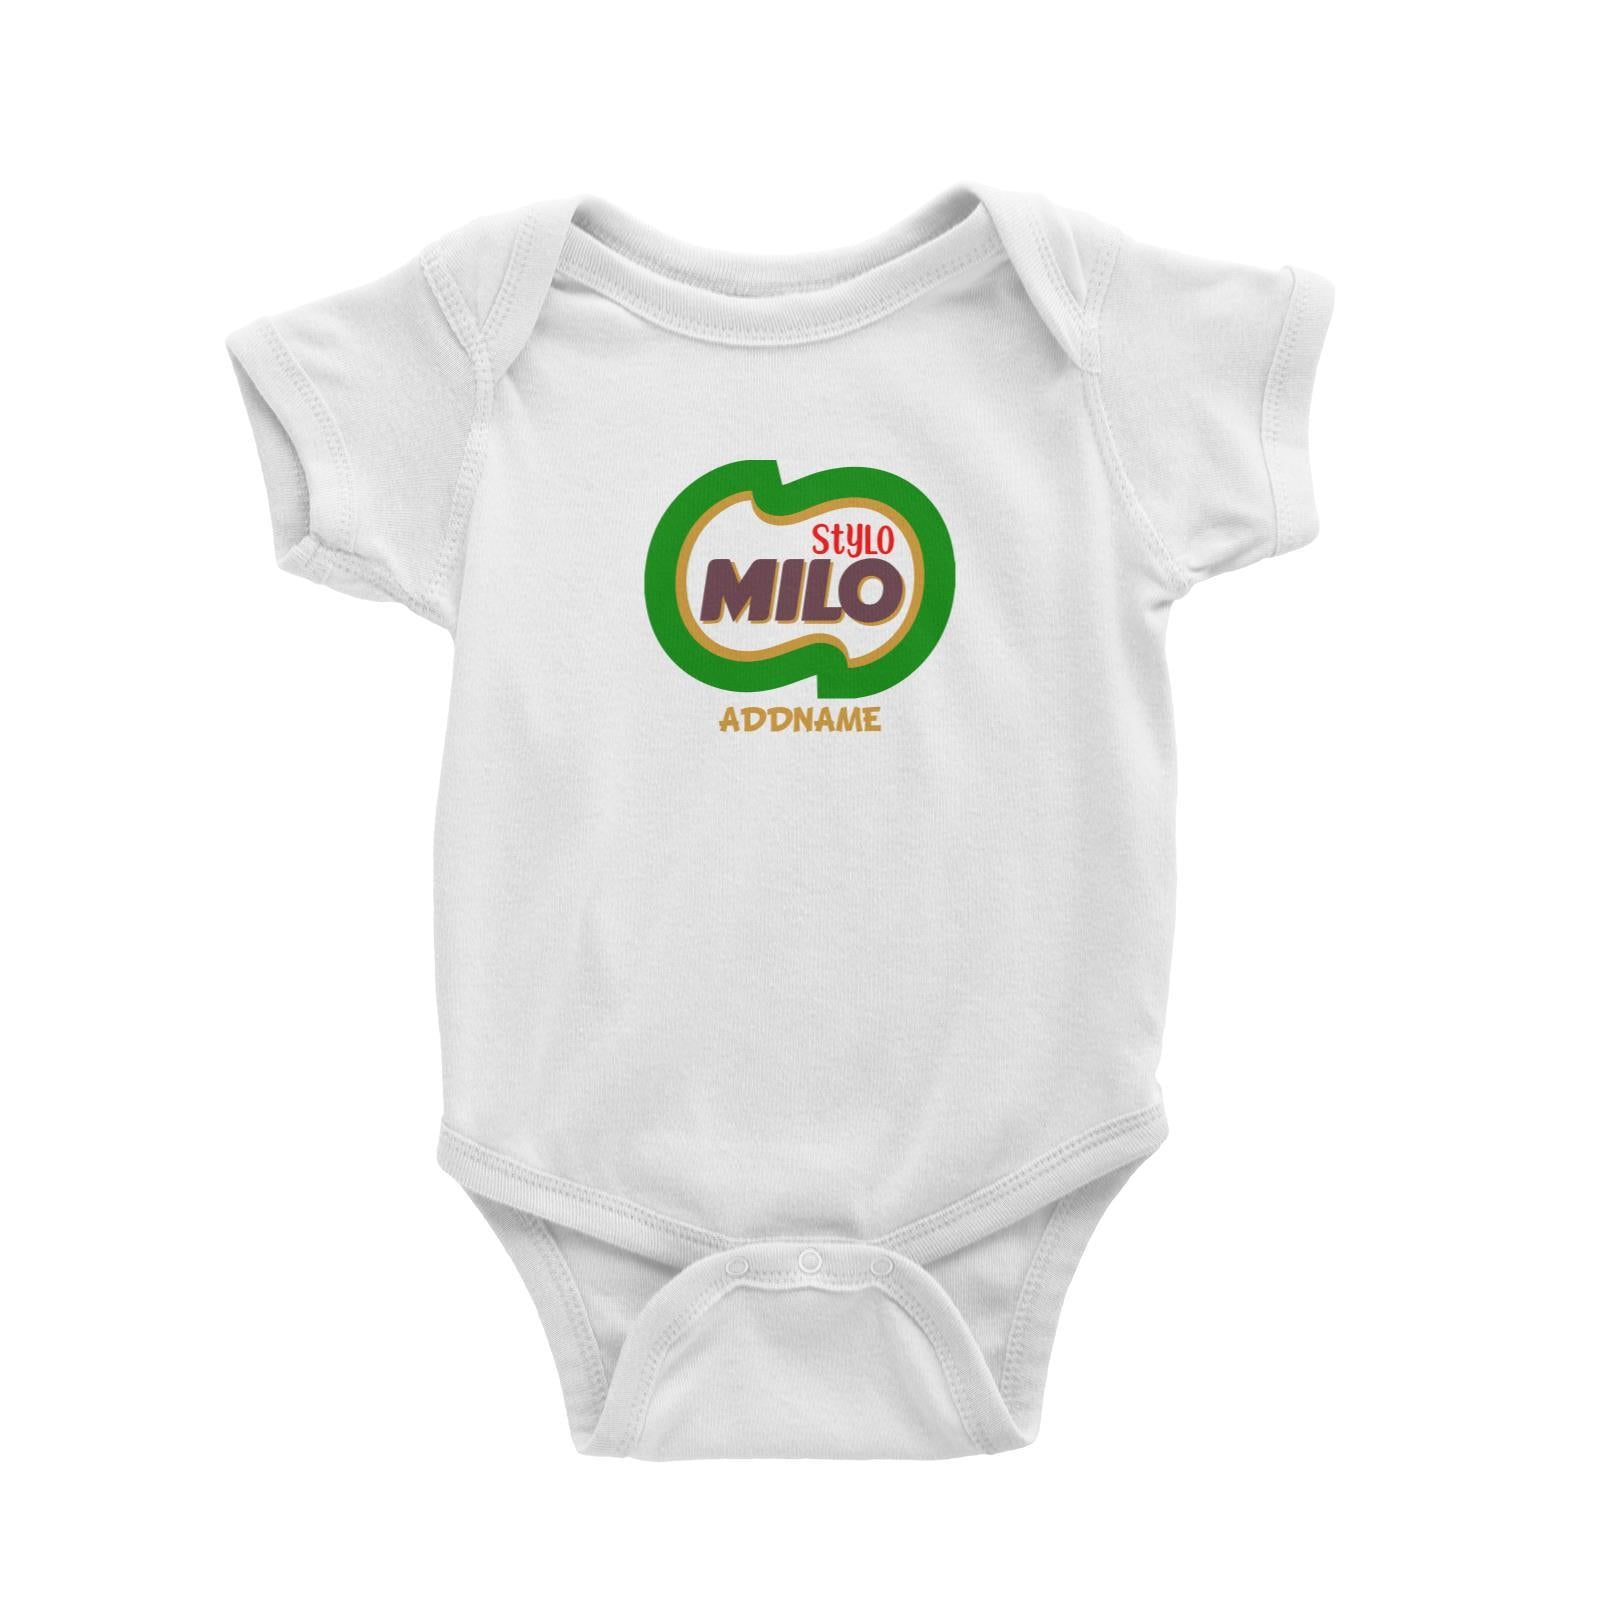 Stylo Milo Baby Romper